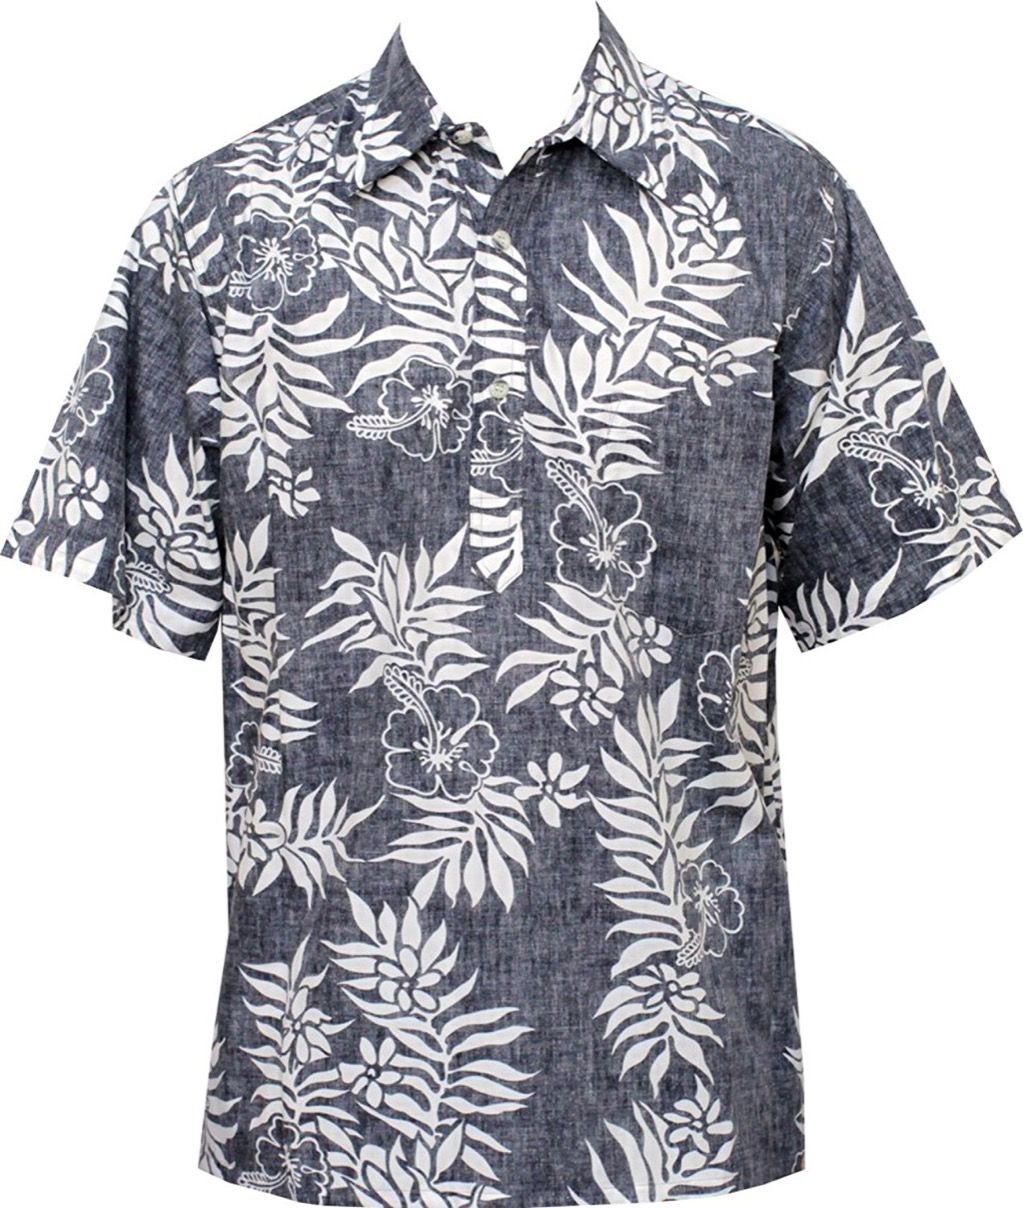 เสื้อฮาวาย 10 ตัวสำหรับการเที่ยวเกาะสุดคูลตลอดฤดูร้อน